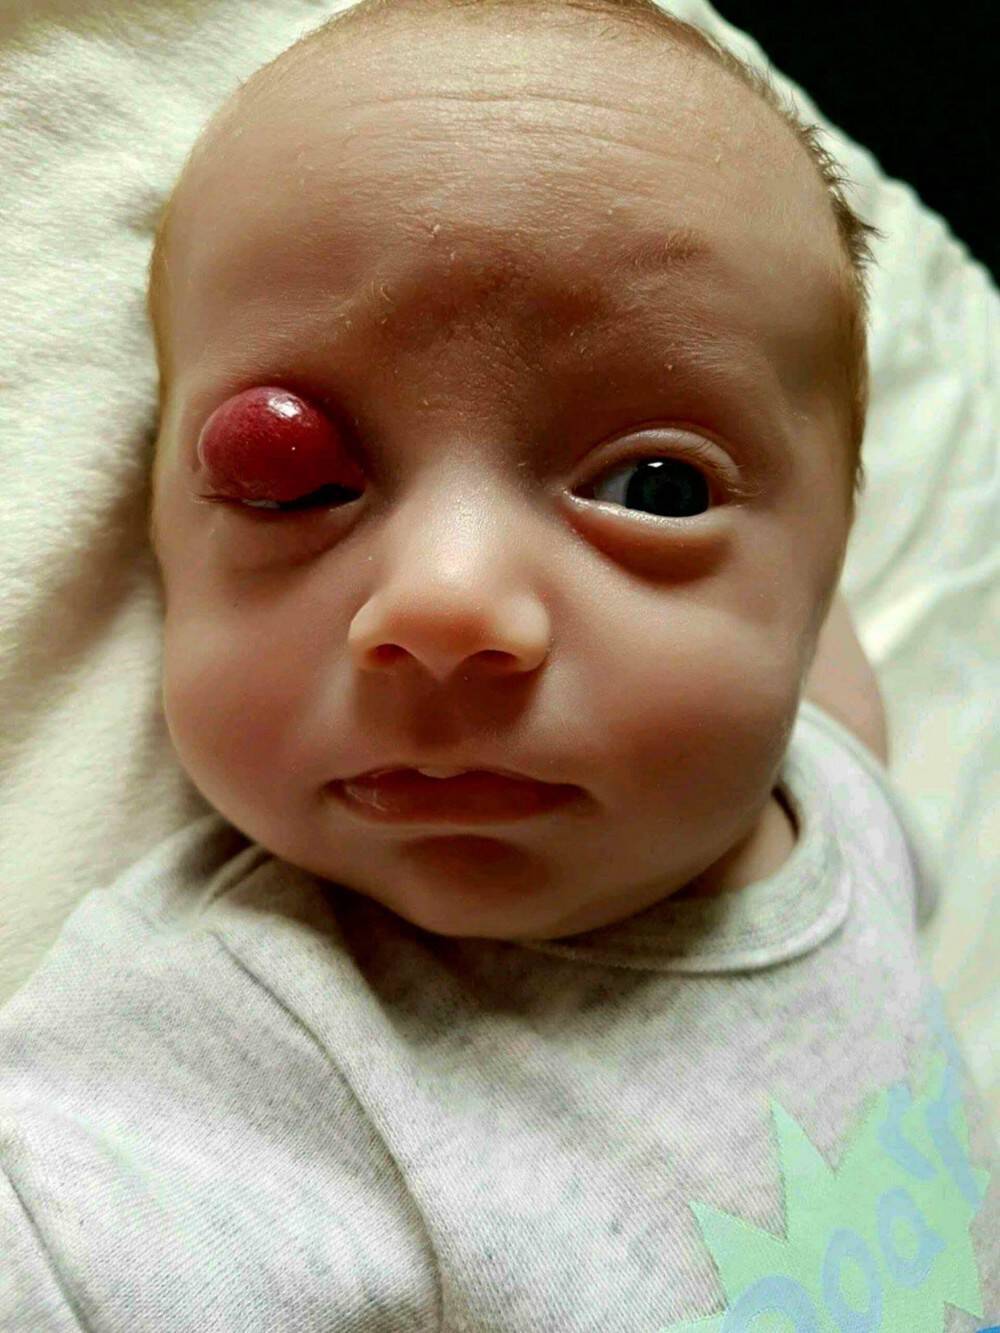 Το πρόωρο μωρό τους γεννήθηκε με έναν μεγάλο όγκο στο μάτι. Όταν οι γιατροί τους απογοήτευσαν, δεν έχασαν την πίστη τους και πέτυχαν το ανέλπιστο!